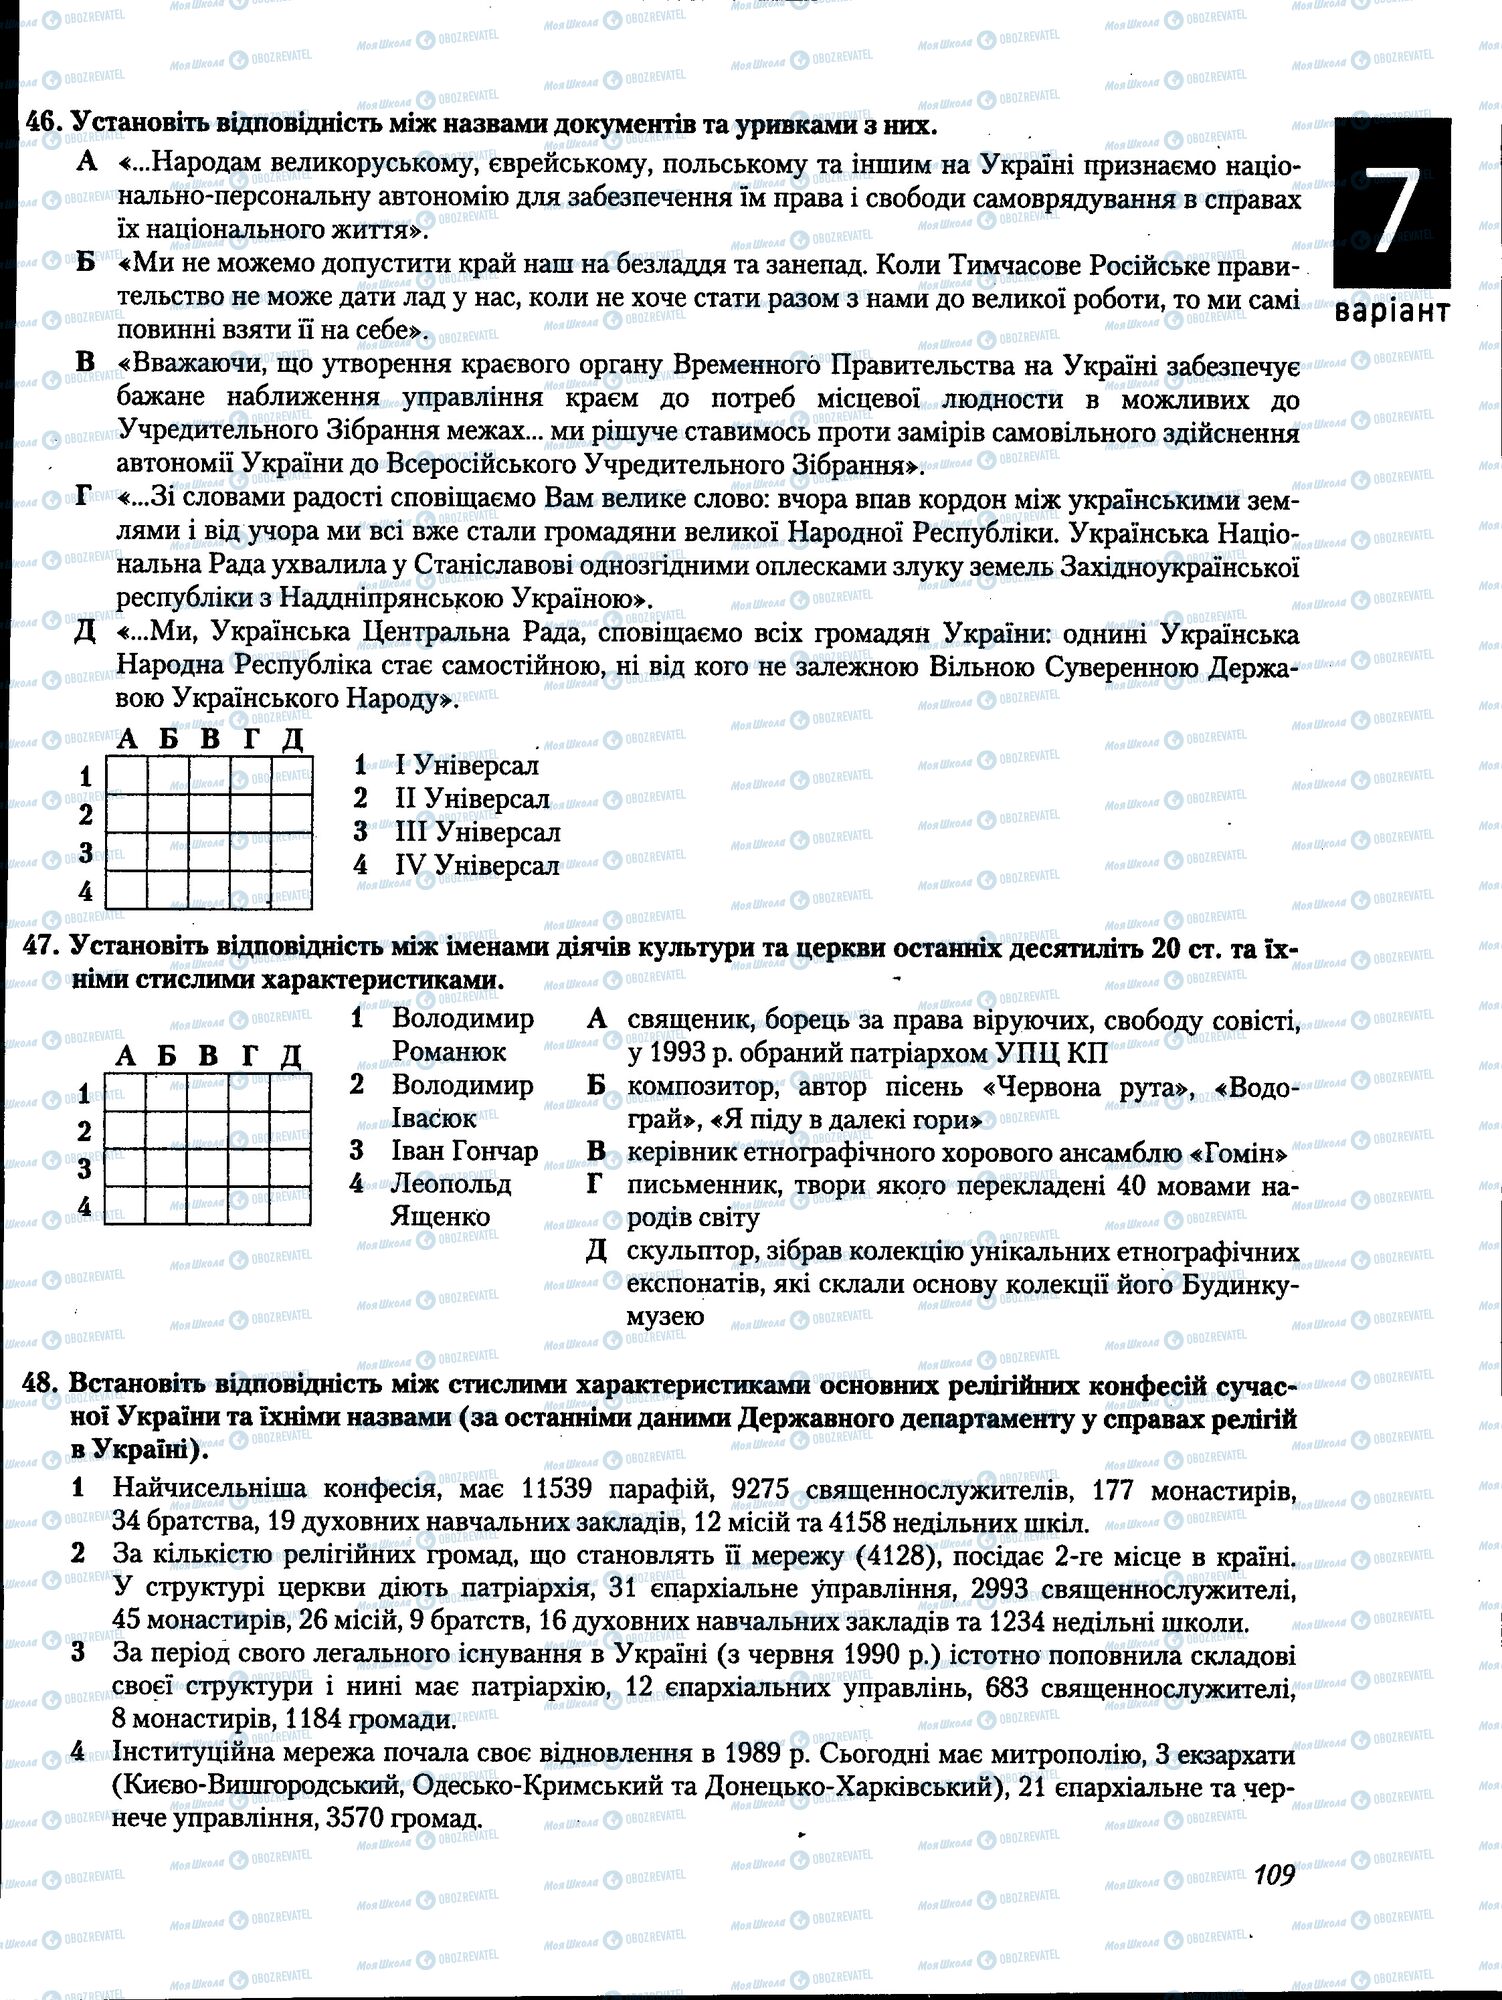 ЗНО История Украины 11 класс страница 109